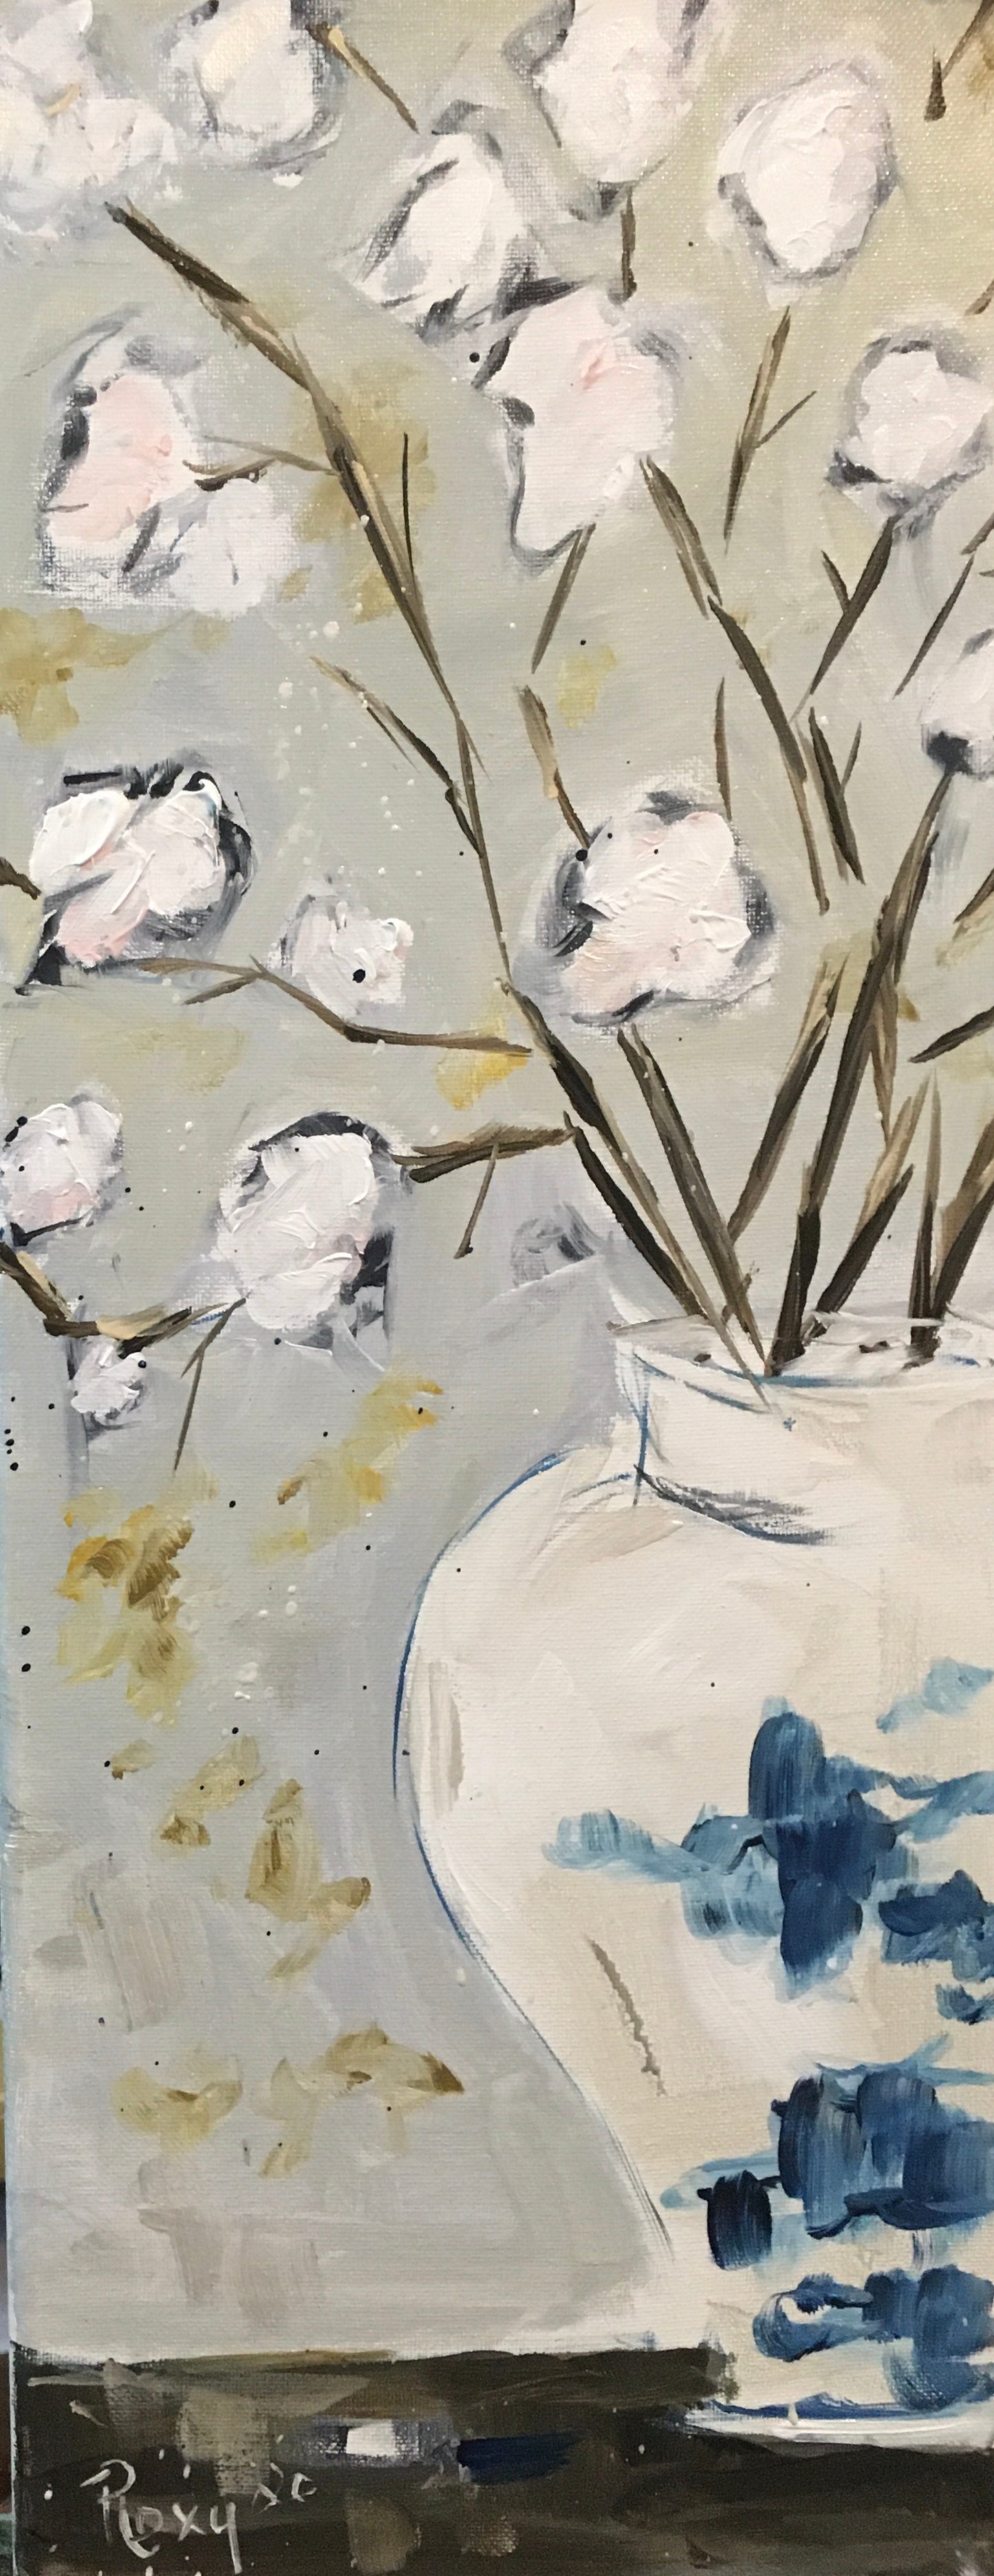 Algodón en un tarro de jengibre Pintura acrílica original enmarcada 8 x 20